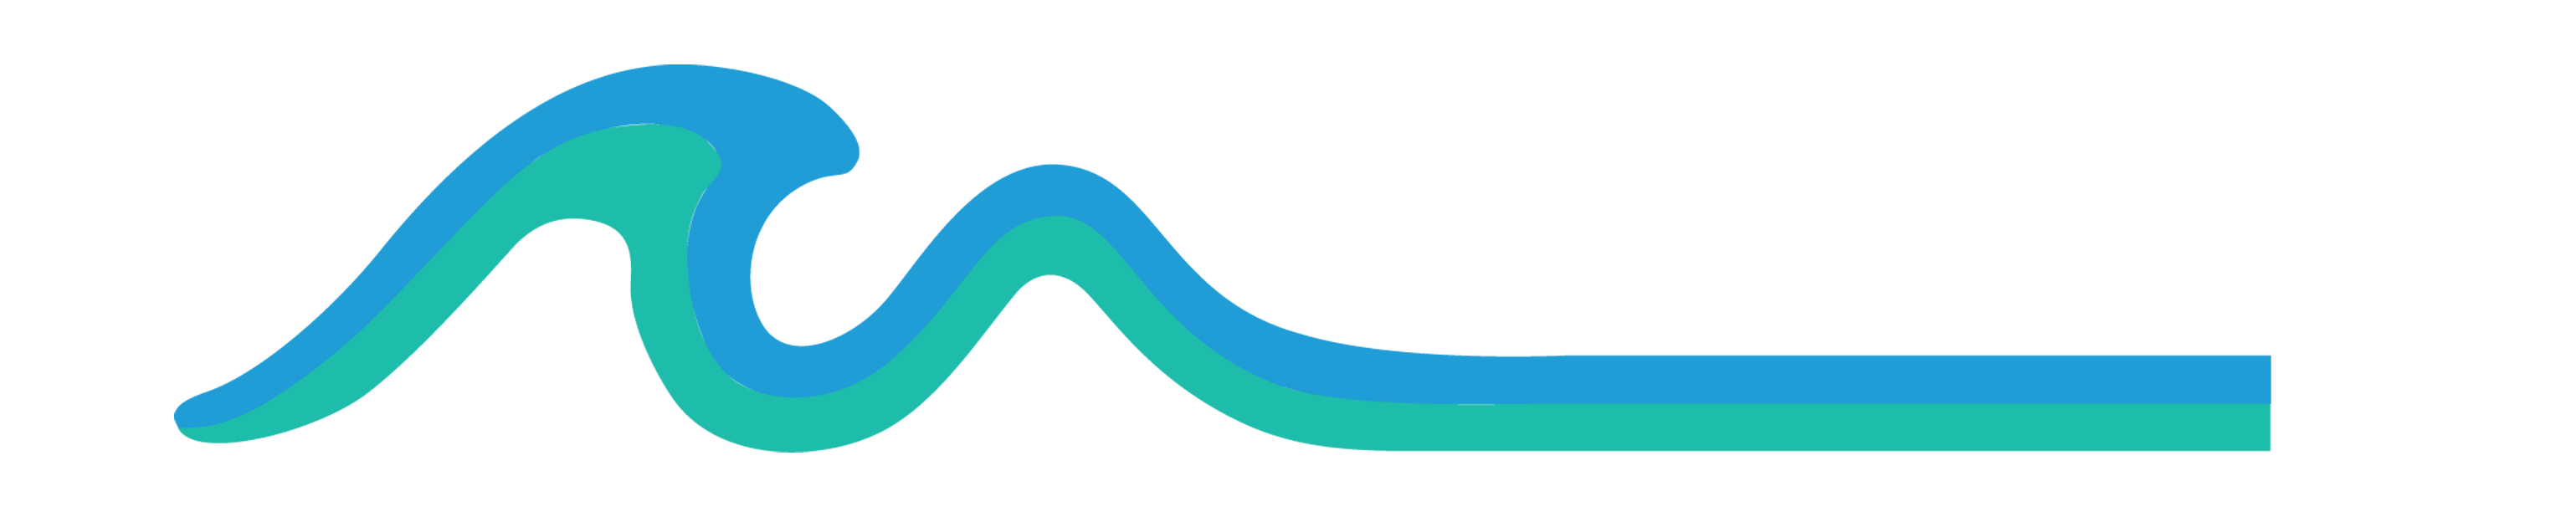 pme logo